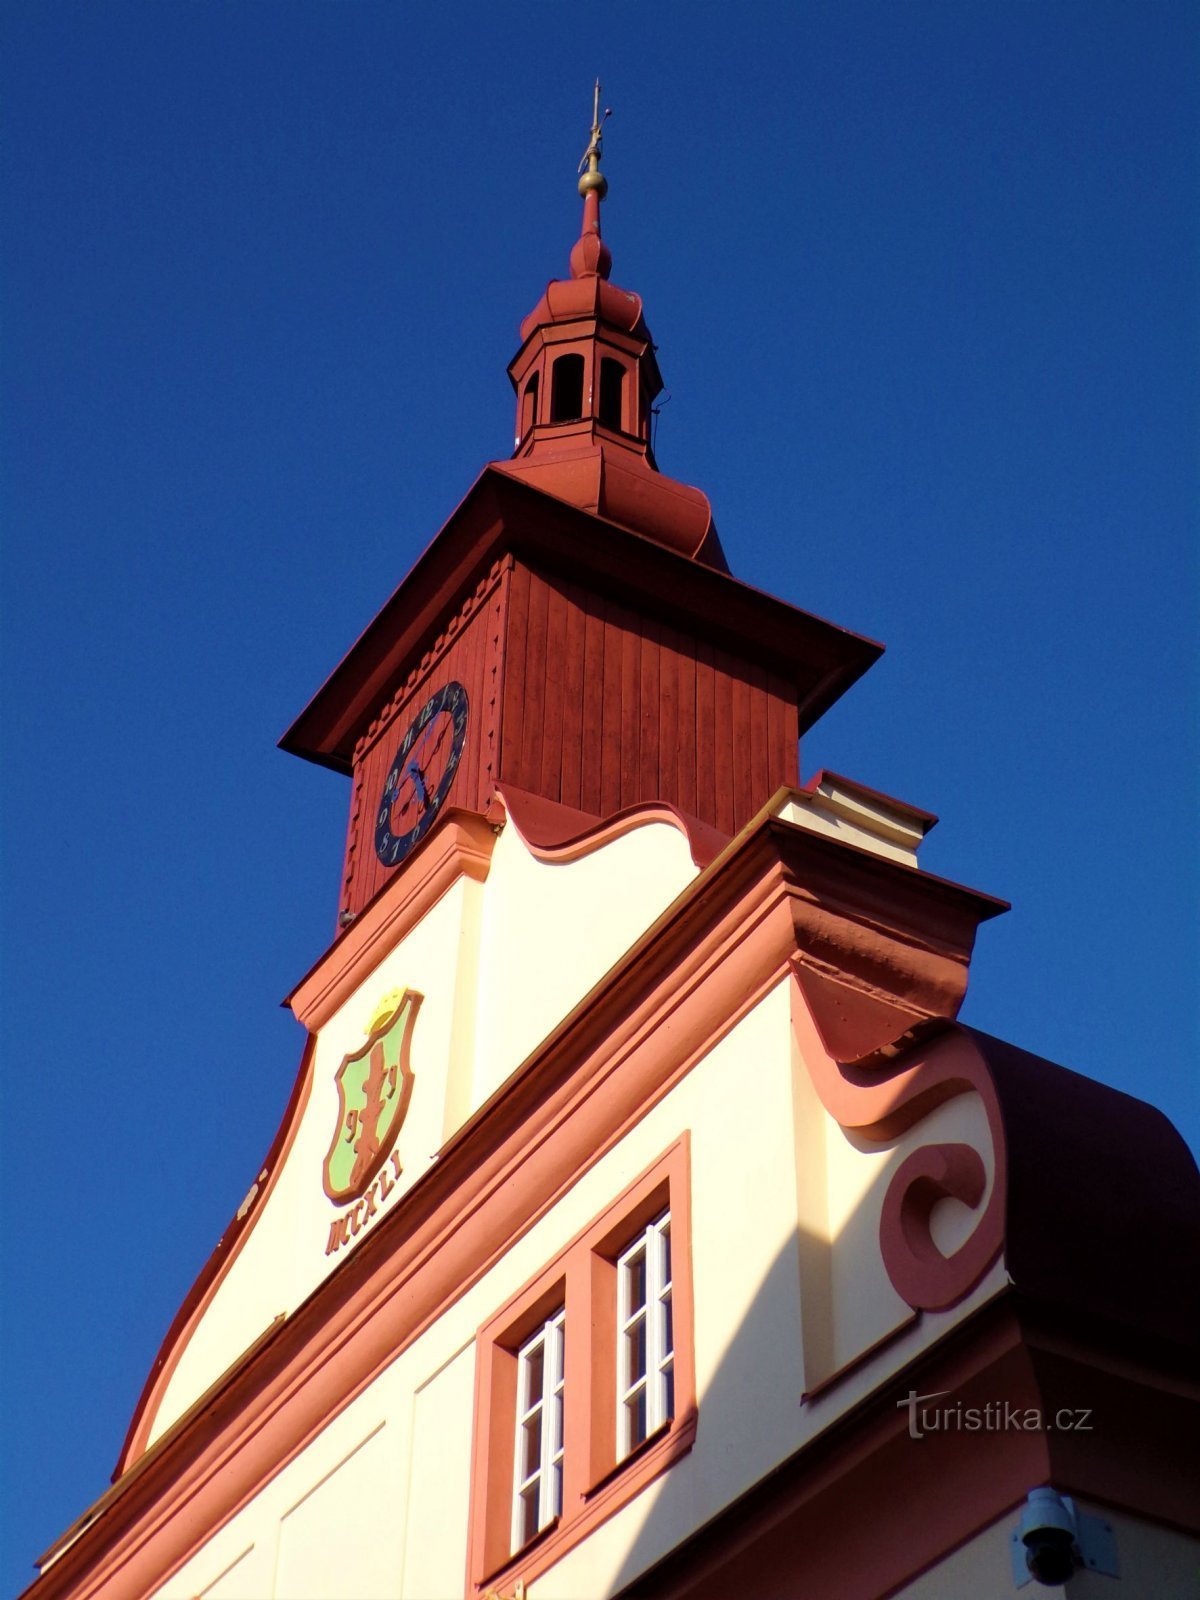 Vanhan kaupungintalon torni nro 30 (Úpice, 8.9.2021)